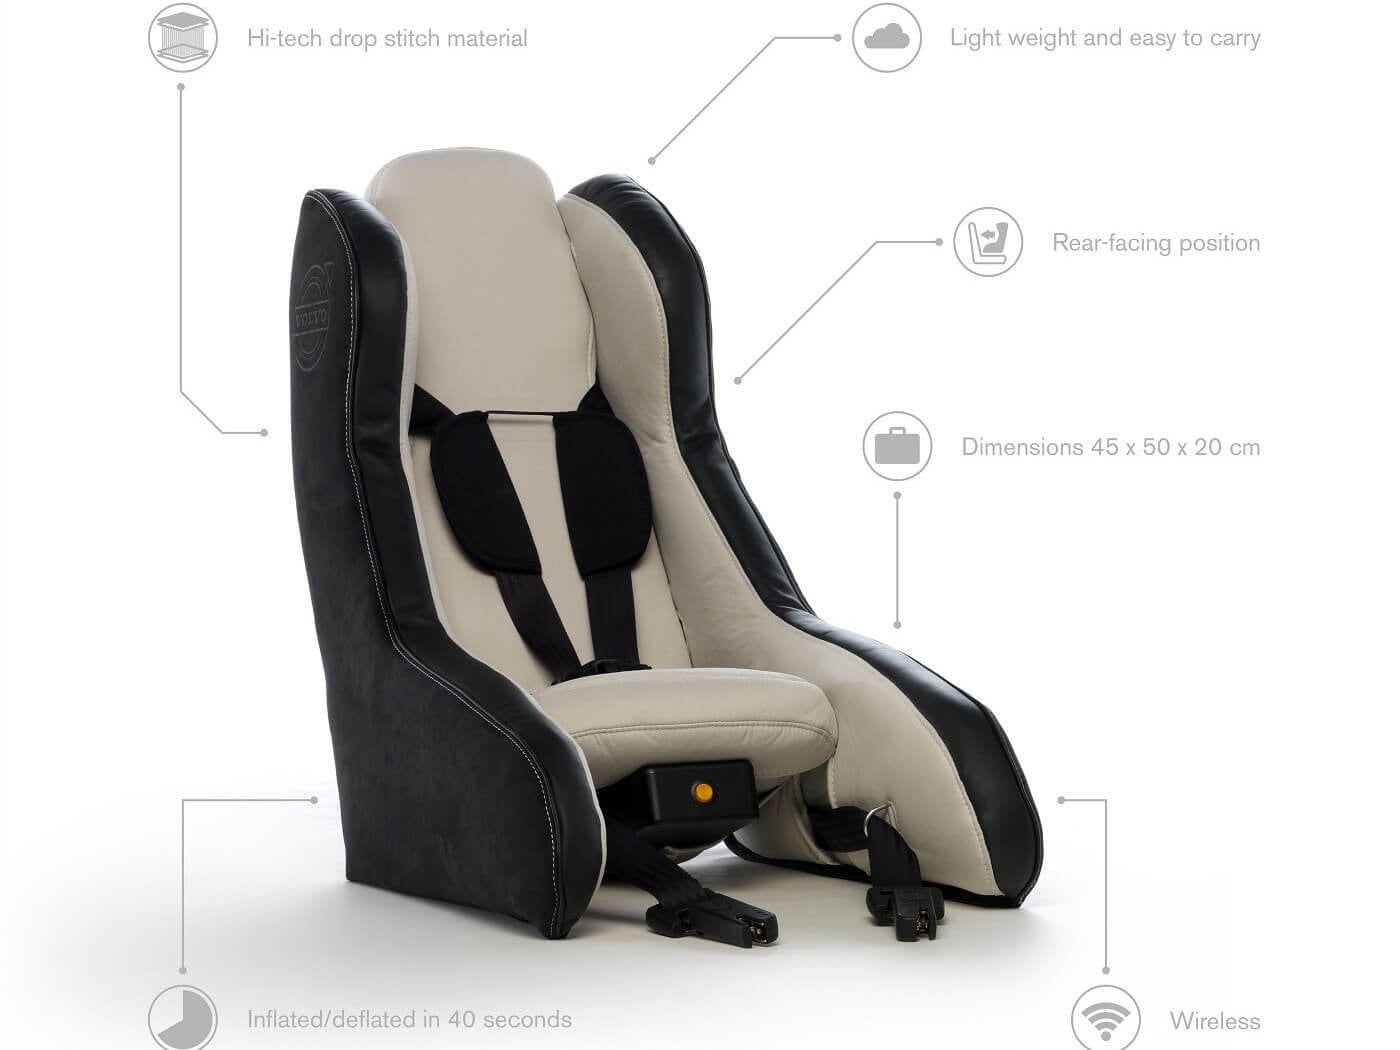 VOLVO 全球首款充氣式兒童安全座椅。